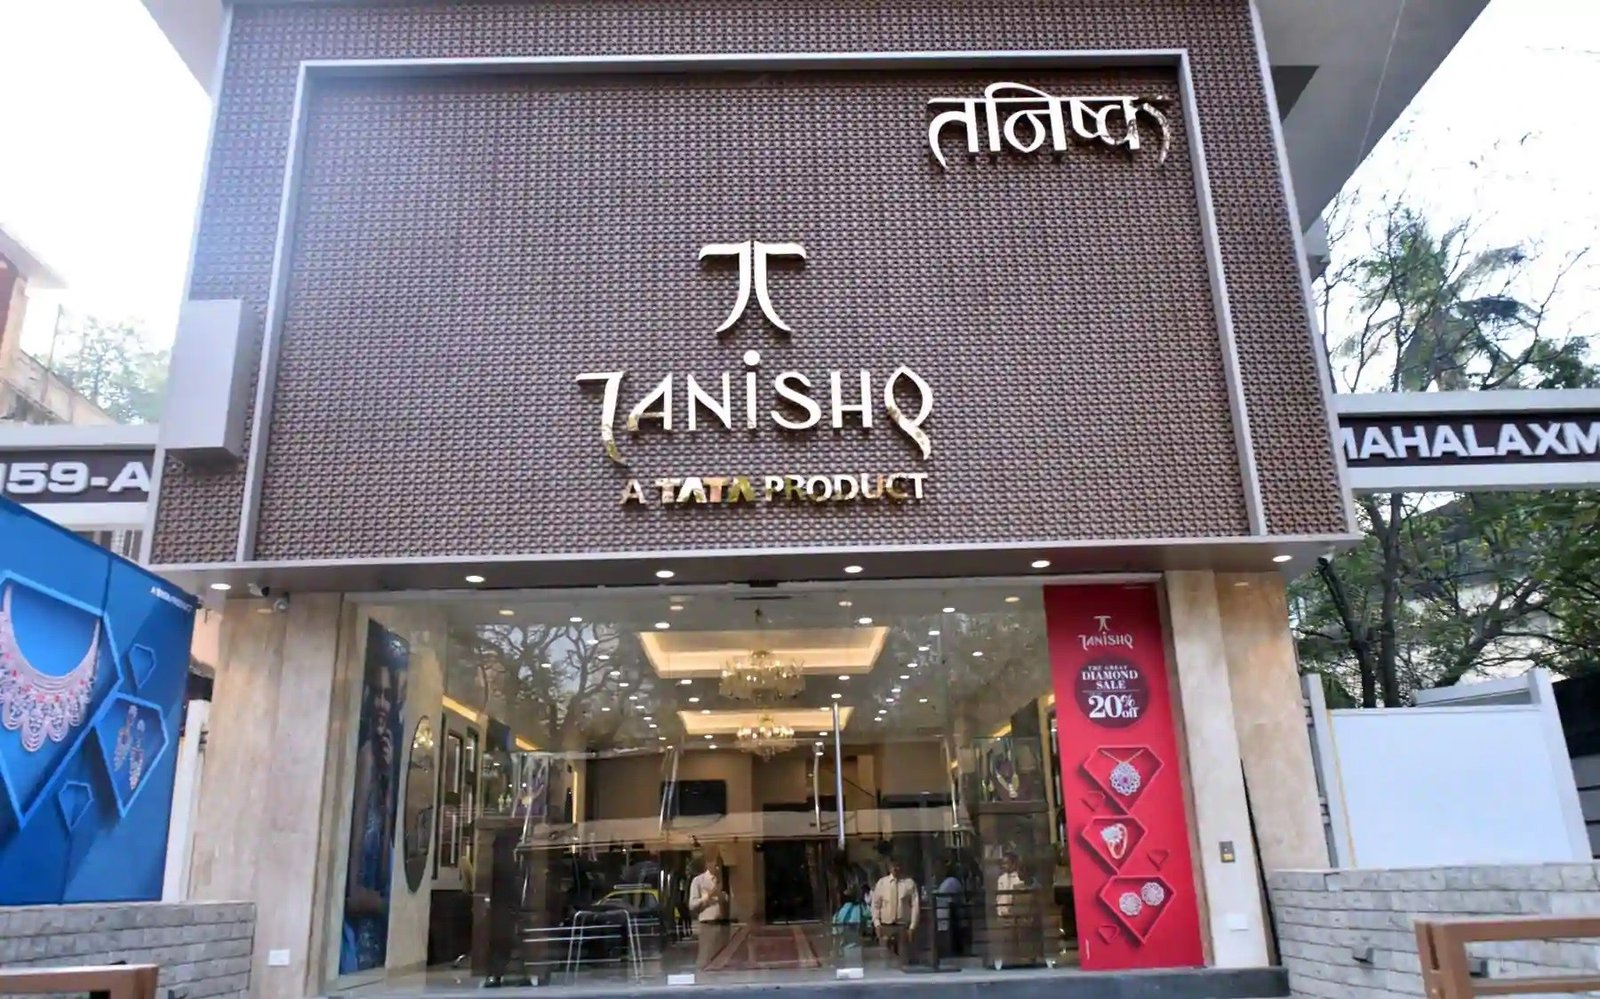 Tanishq Marketing Mix